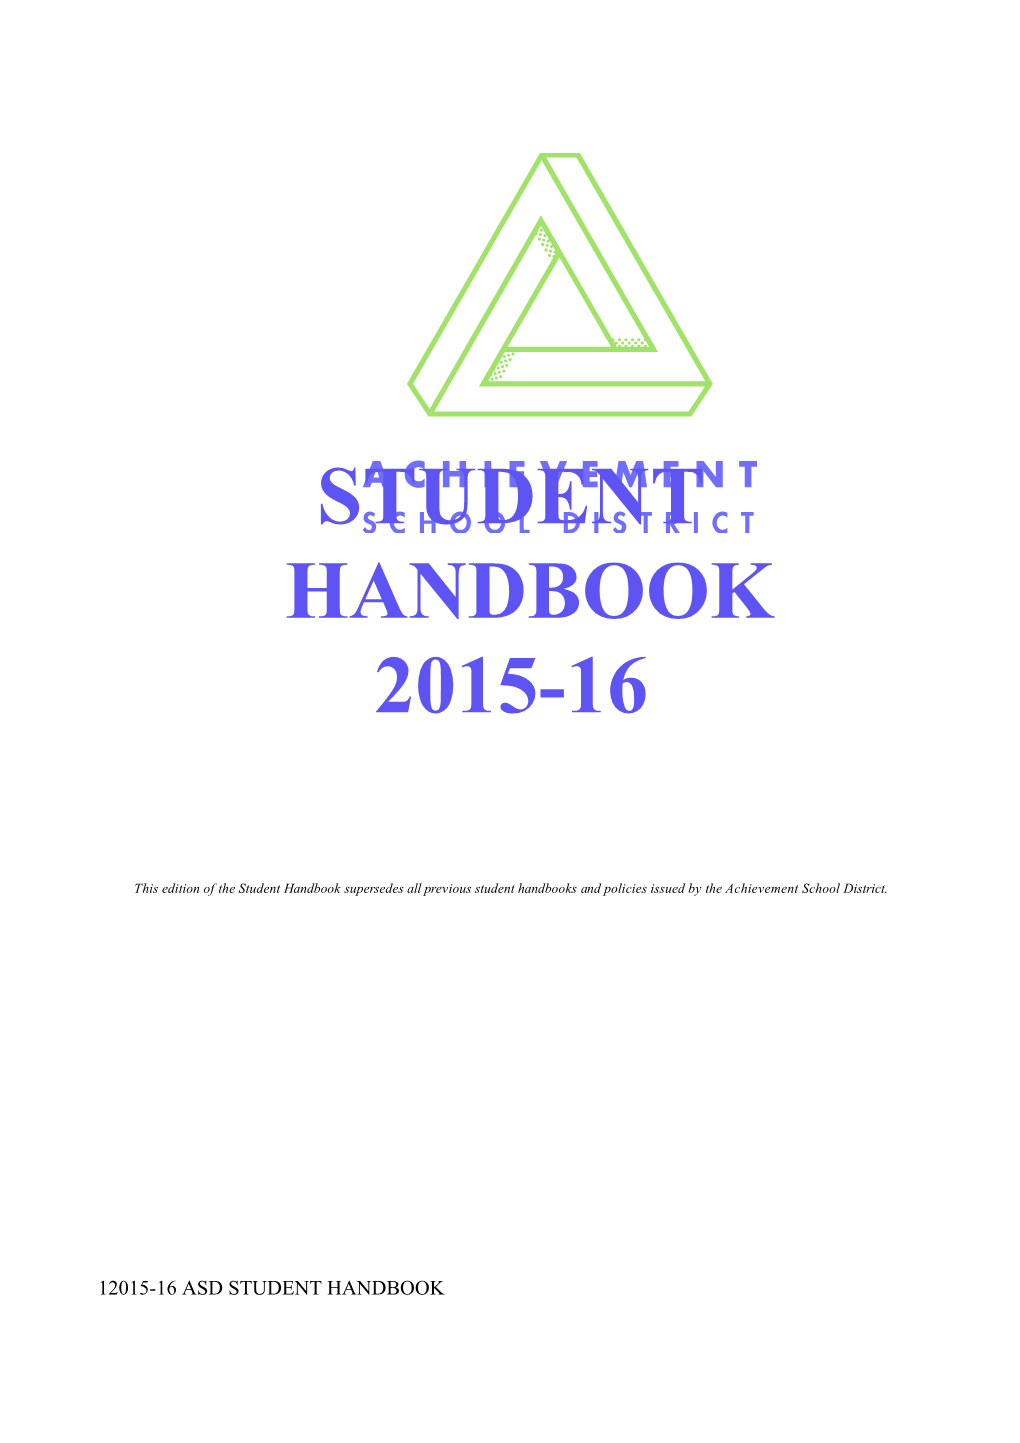 Tennessee Achievement School District Student Handbook